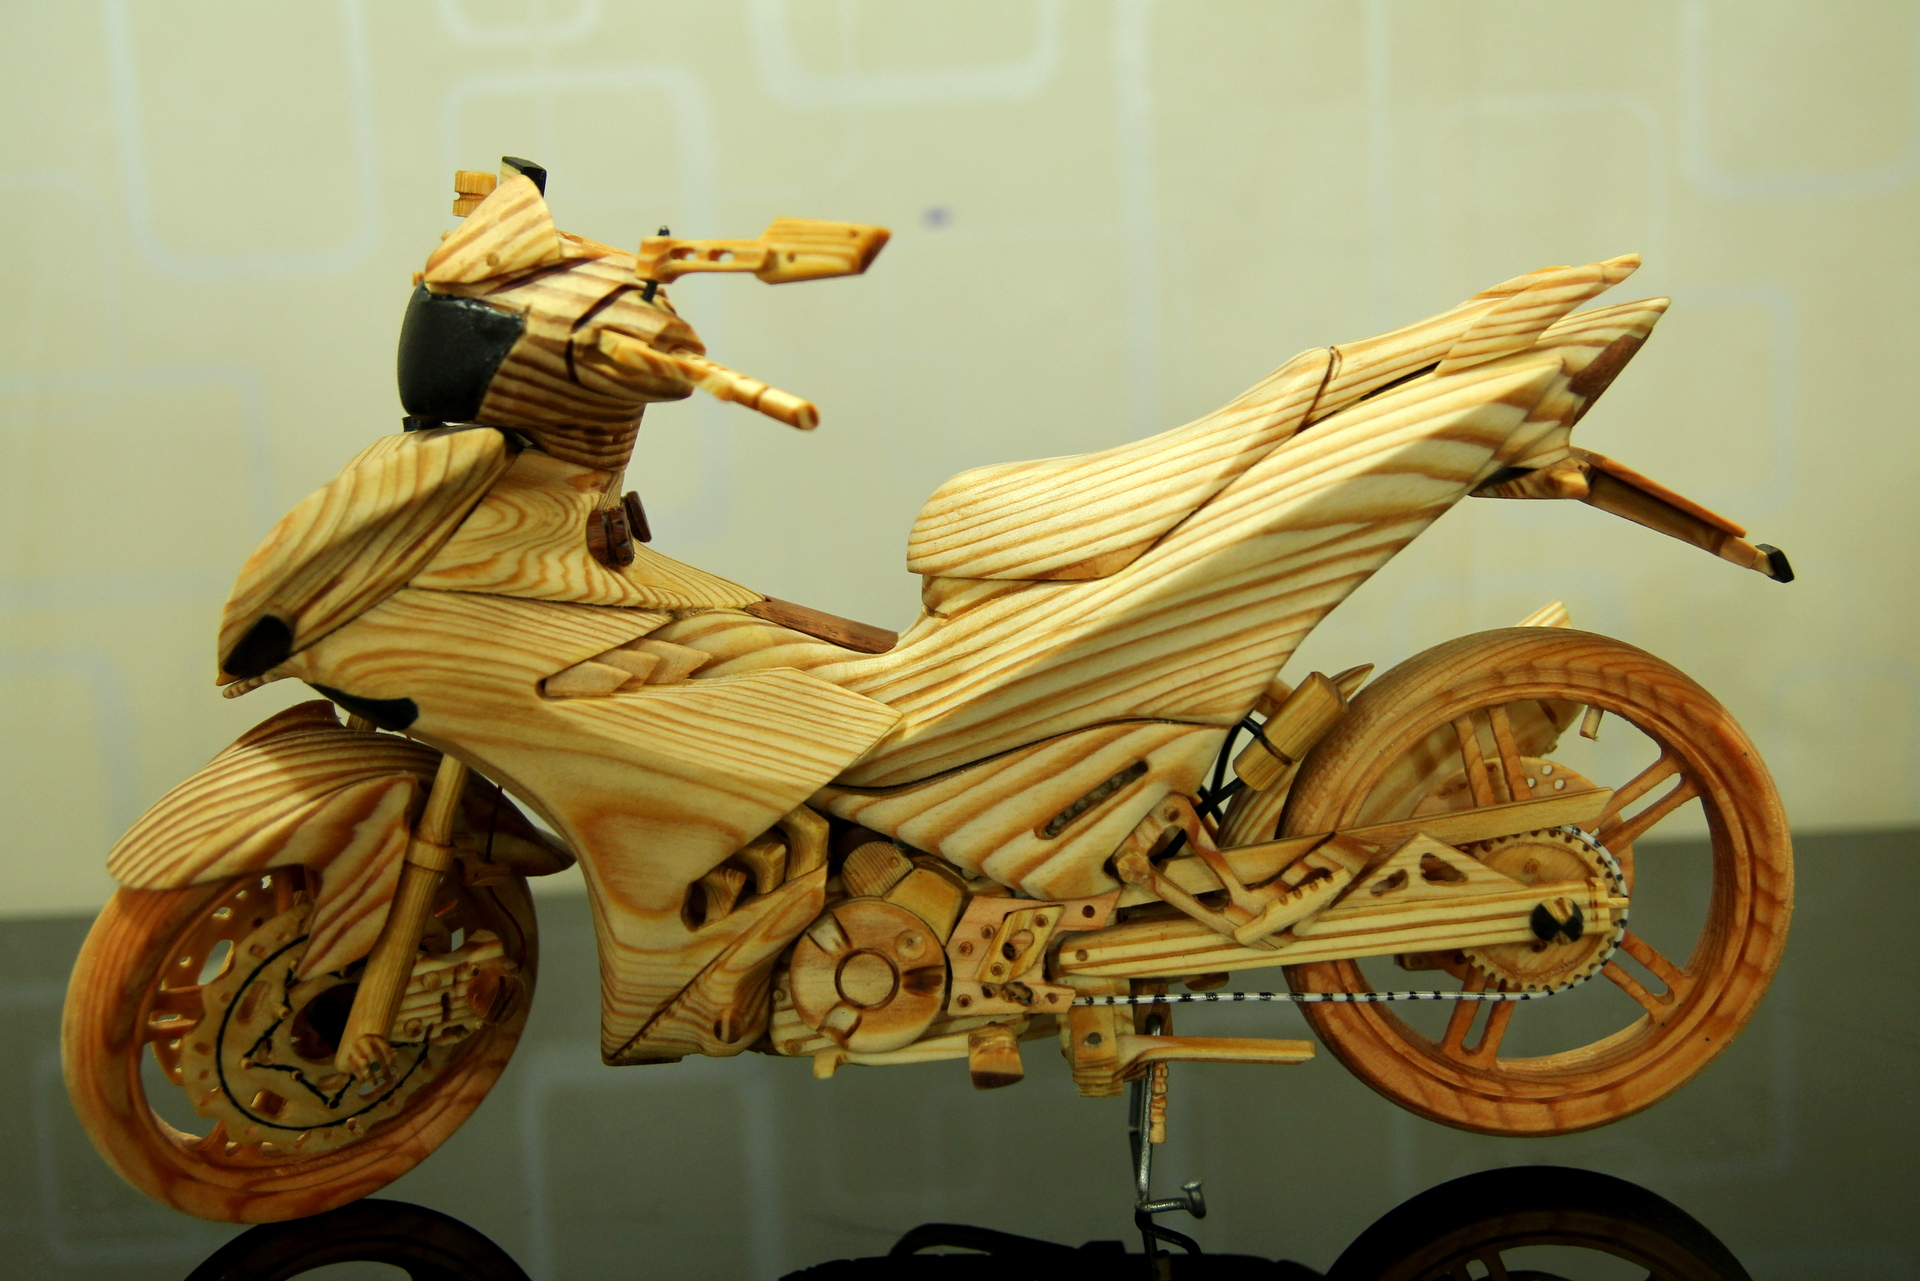 Mô hình Exciter 150 bằng gỗ của biker Sài Gòn